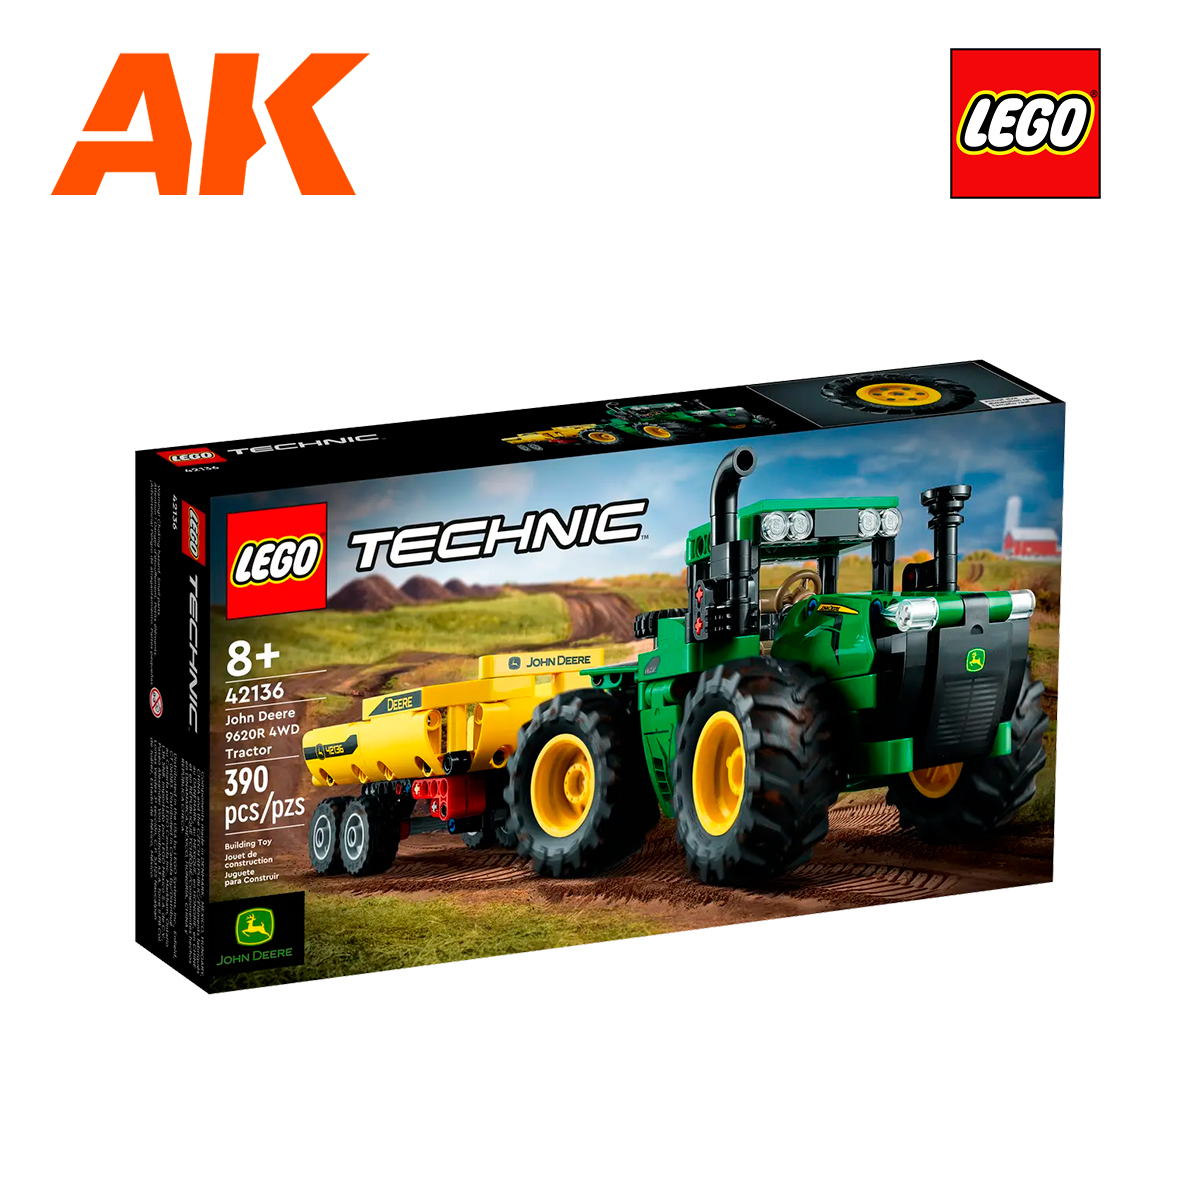 John Deere Lego Tractors and Combines on Display